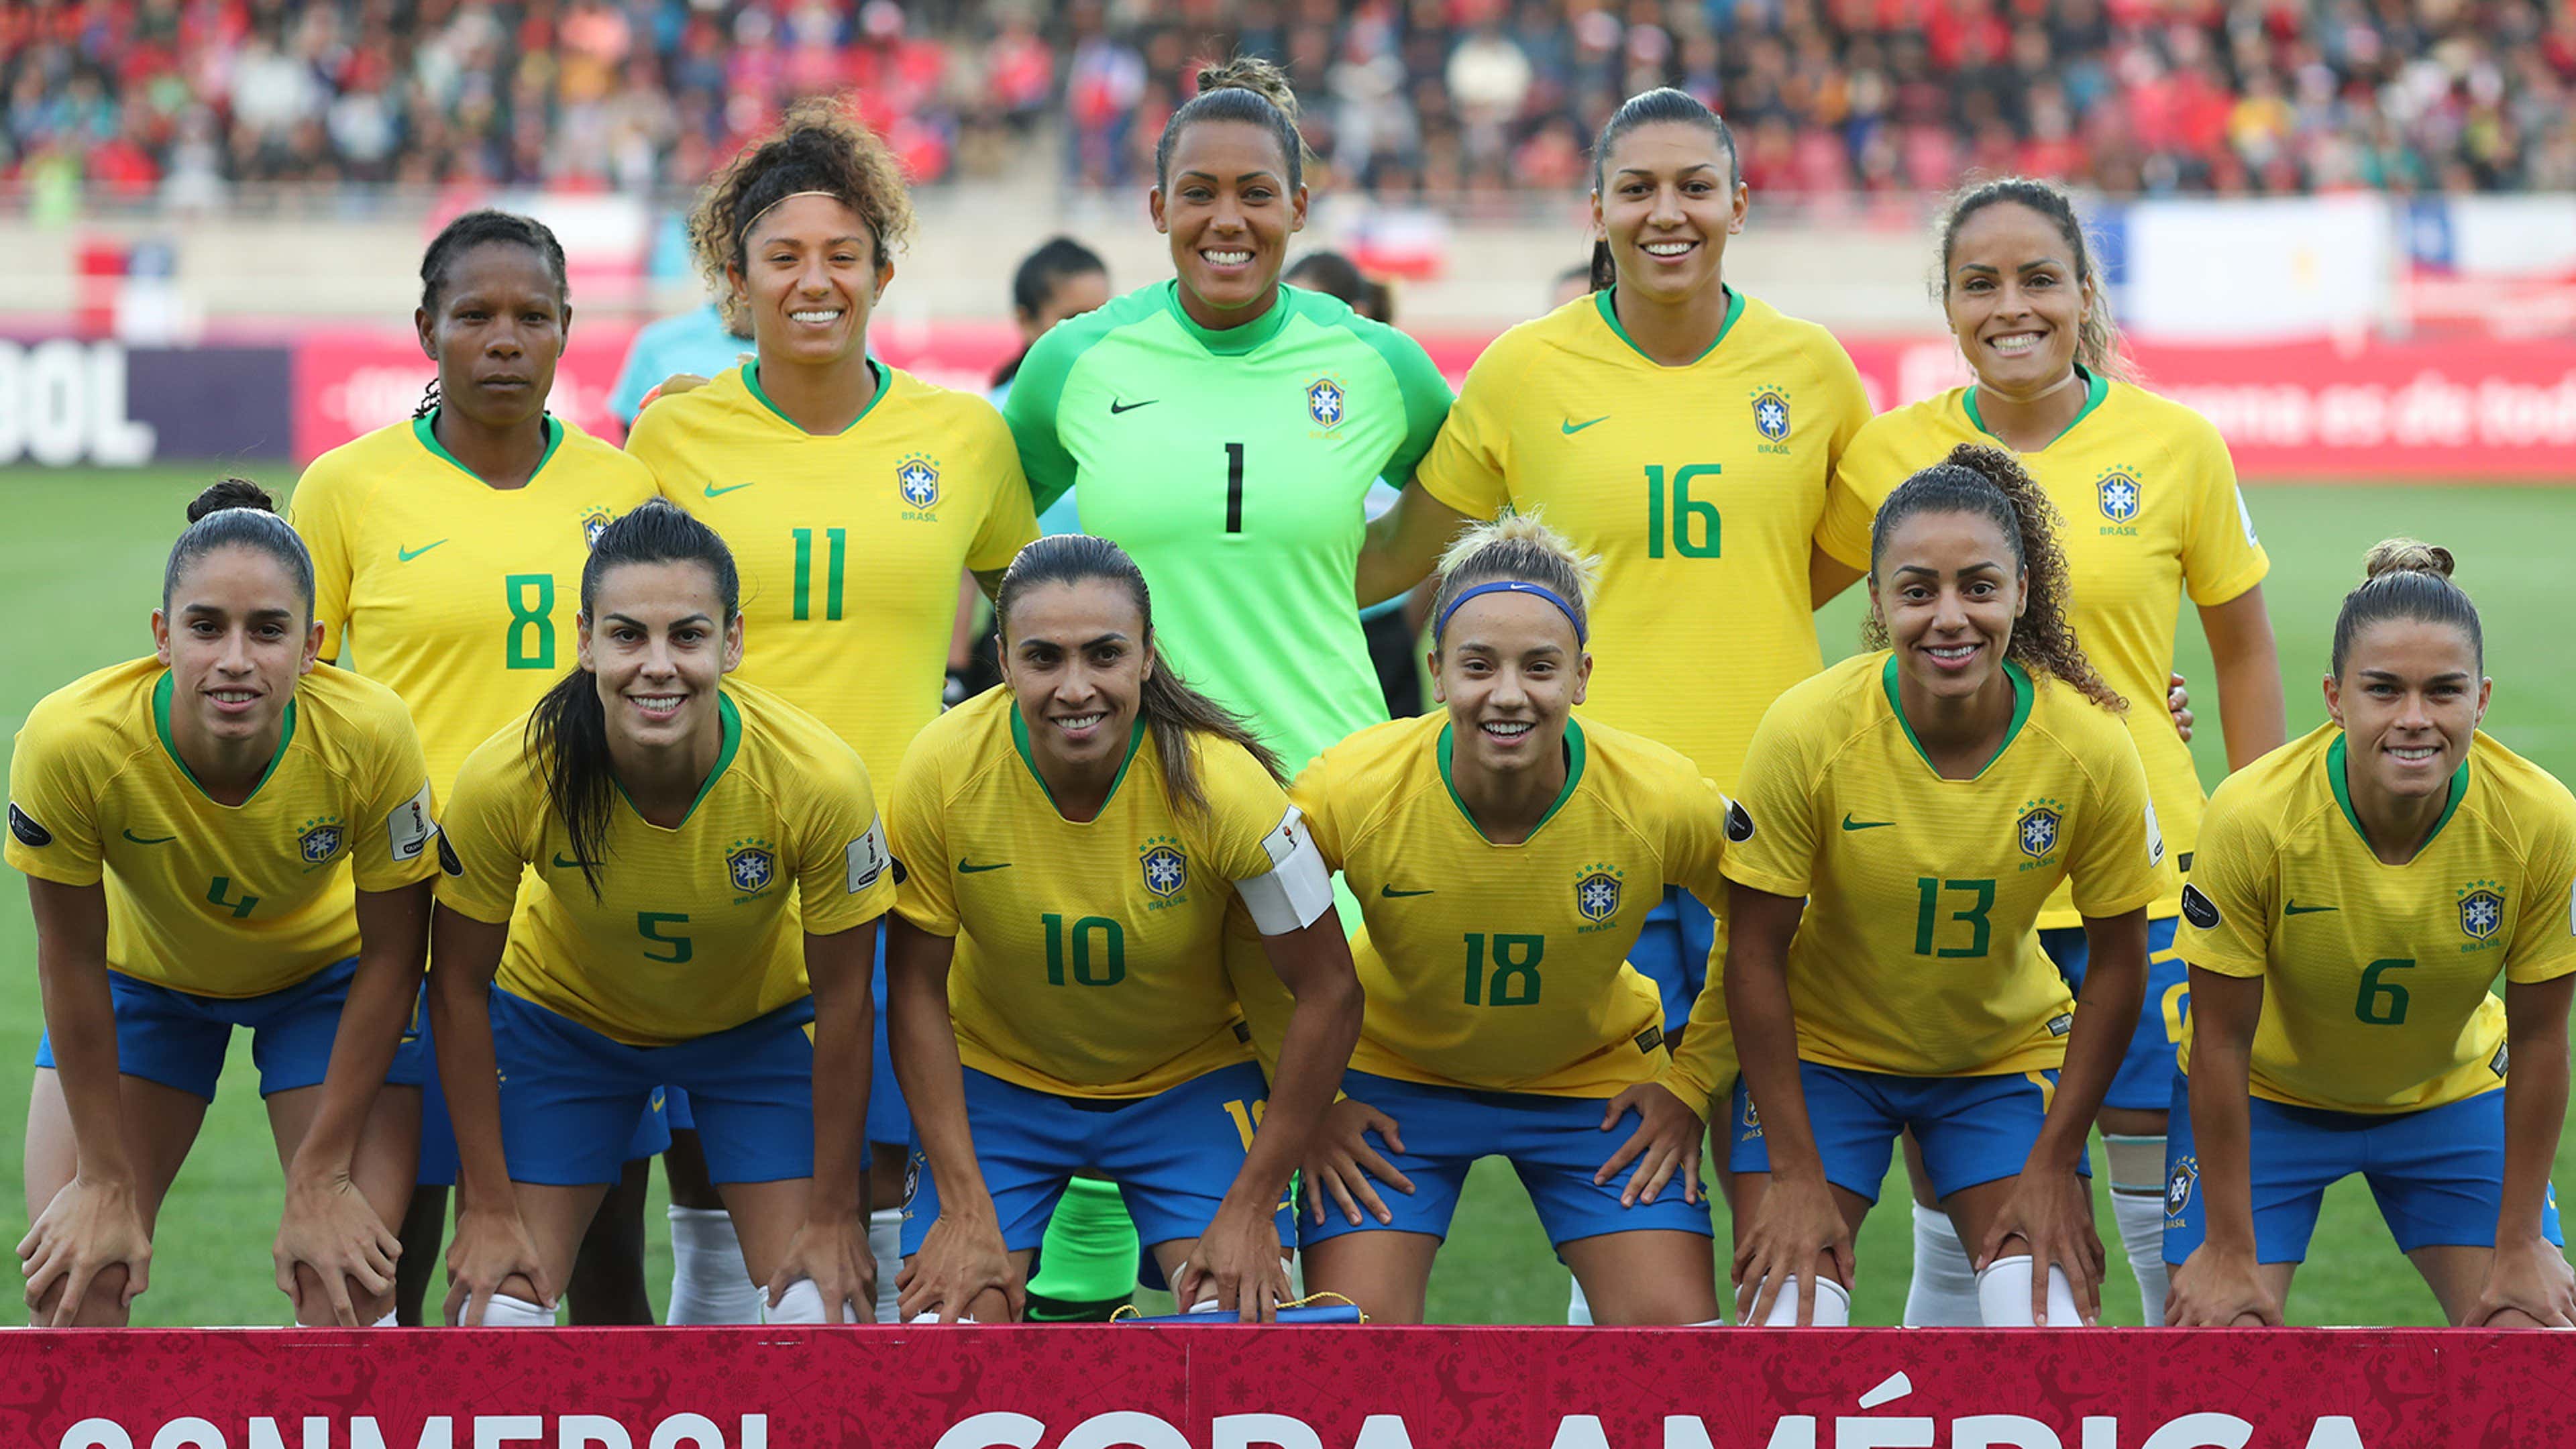 Na Copa do Mundo Feminina, Brasil perde para a França, jogo copa do mundo  feminina 